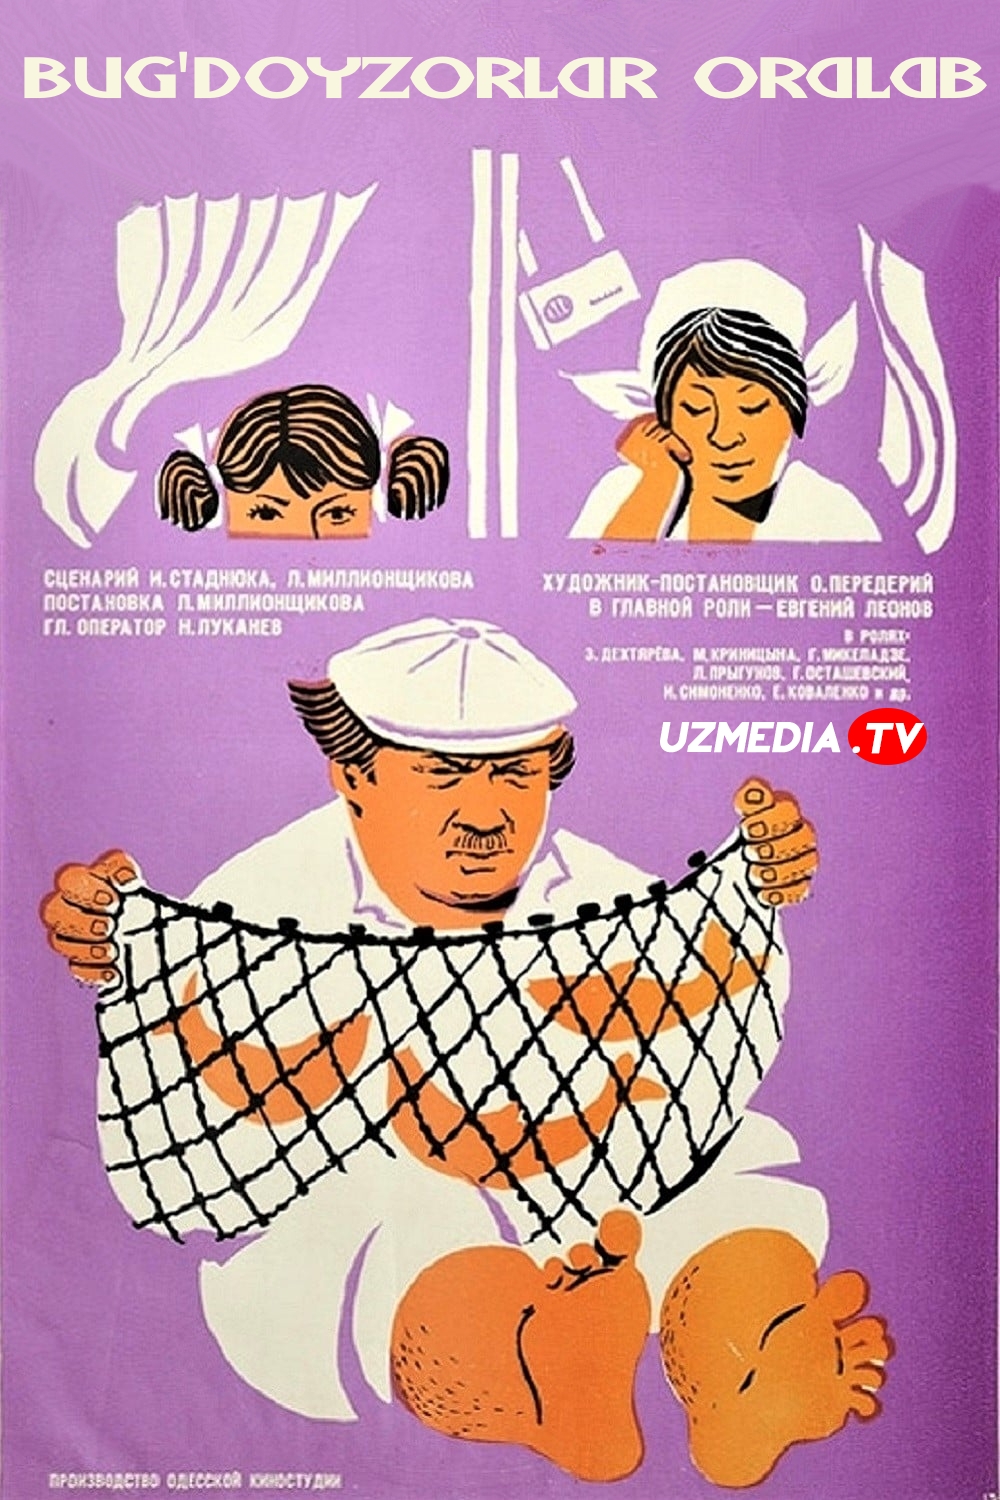 Bug'doyzorlar oralab SSSR filmi Uzbek tilida O'zbekcha tarjima kino 1970 SD skachat